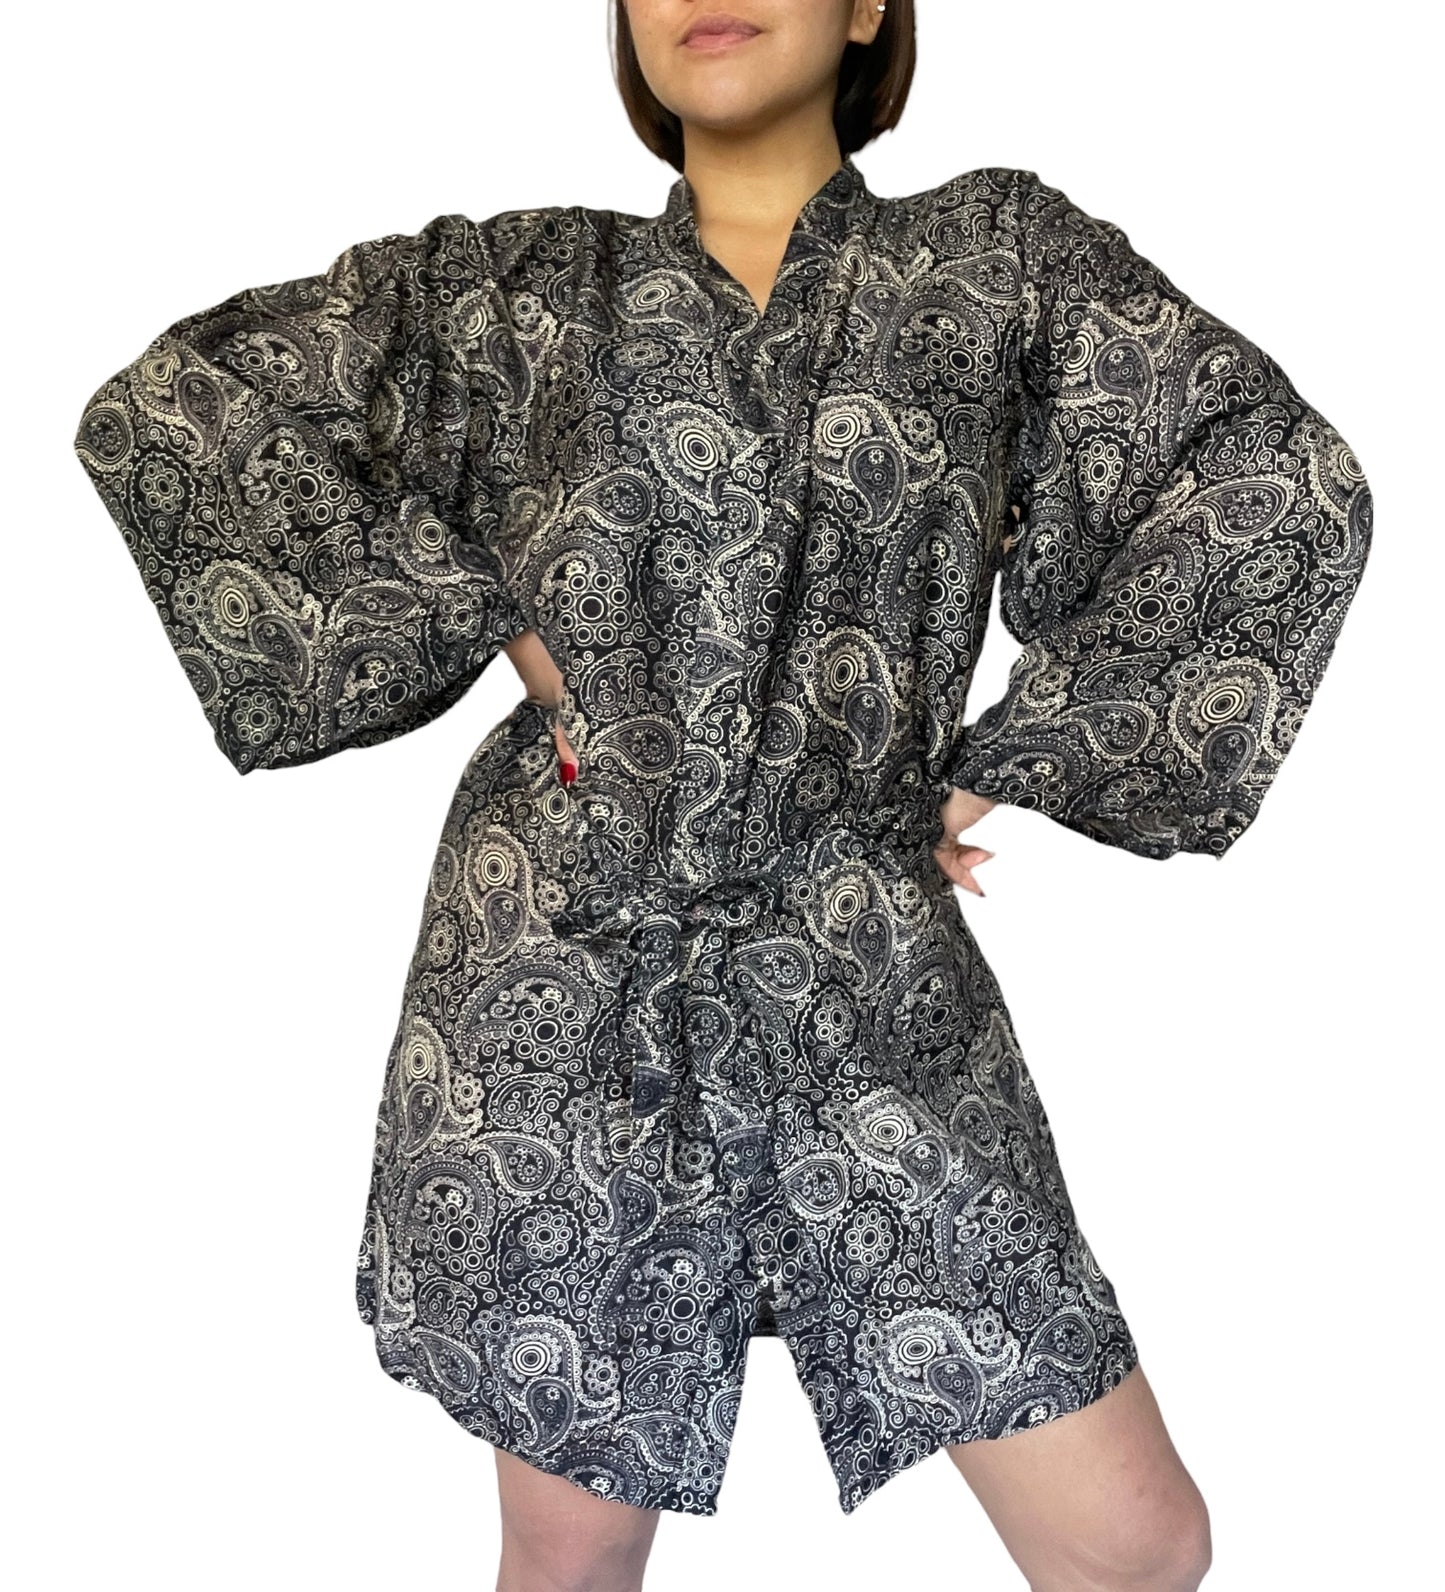 Awesome Black Kimono Robes x